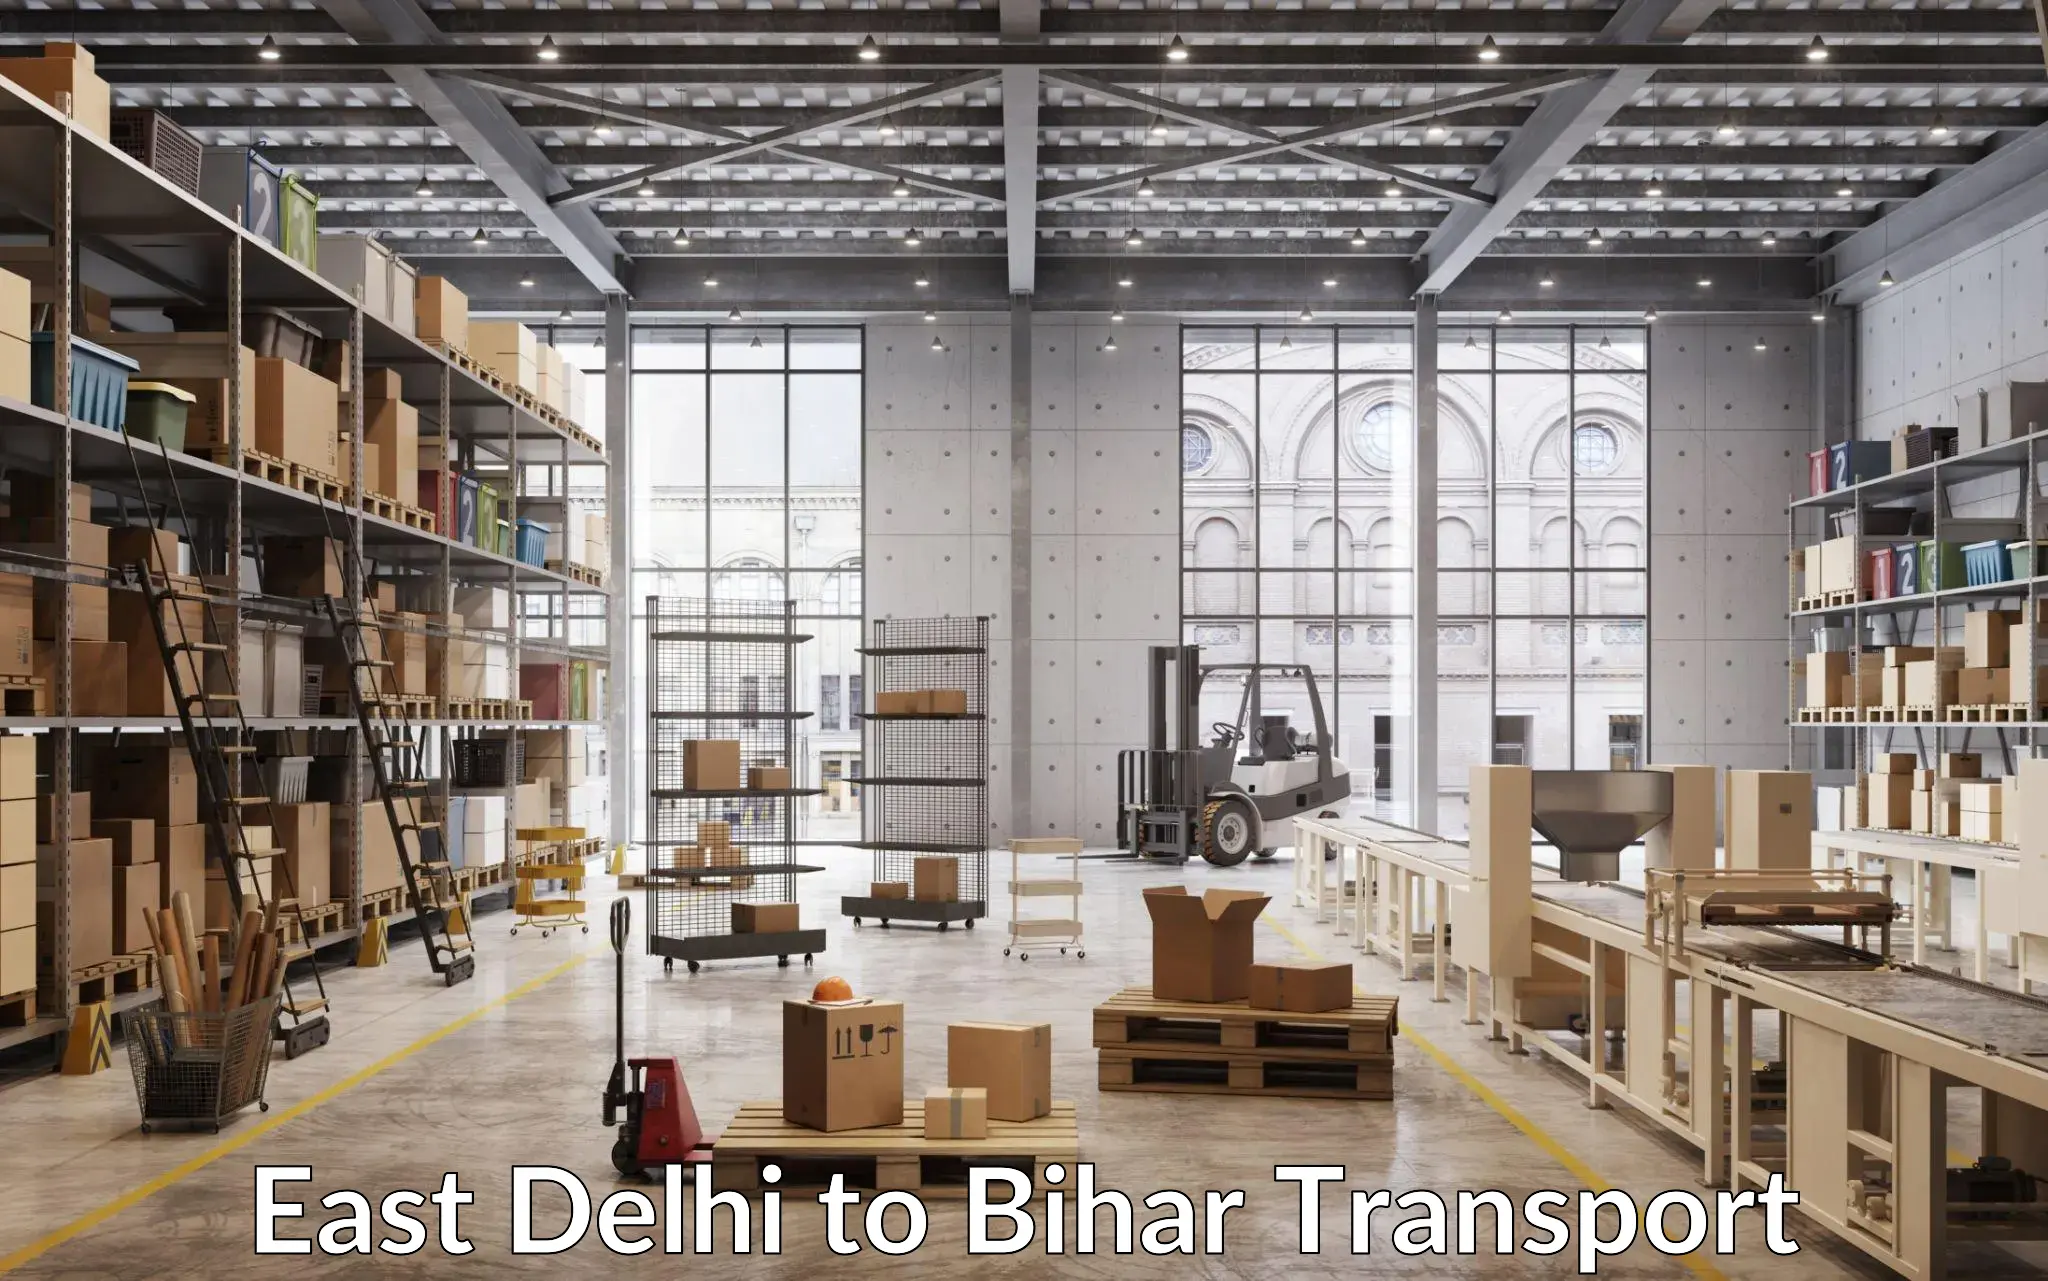 Nearest transport service in East Delhi to Bihar